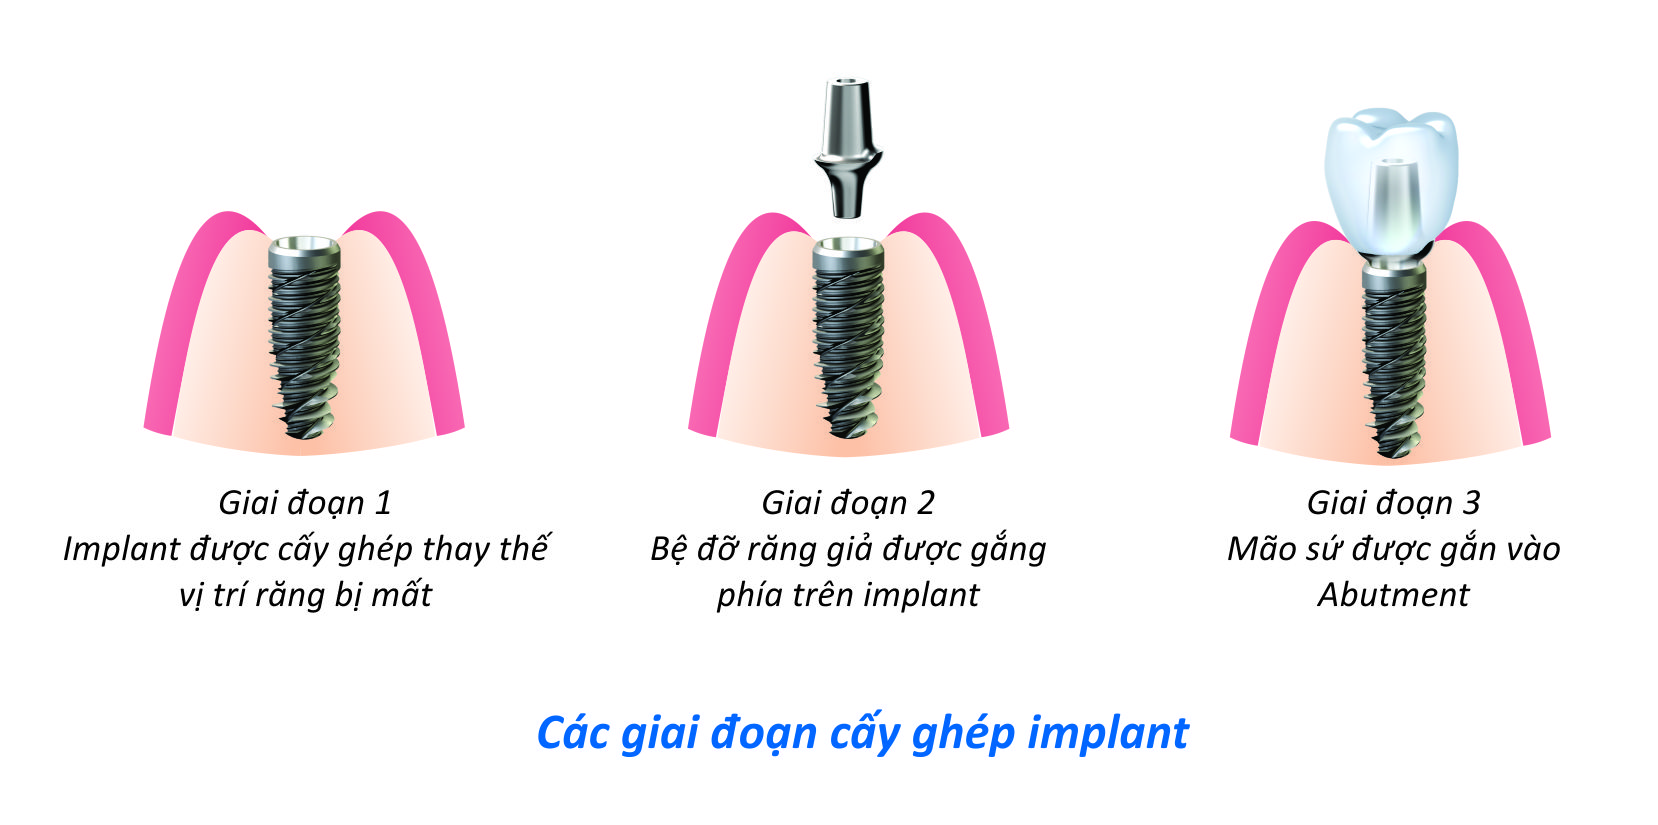 Đặc điểm của công nghệ cấy ghép Implant 4S